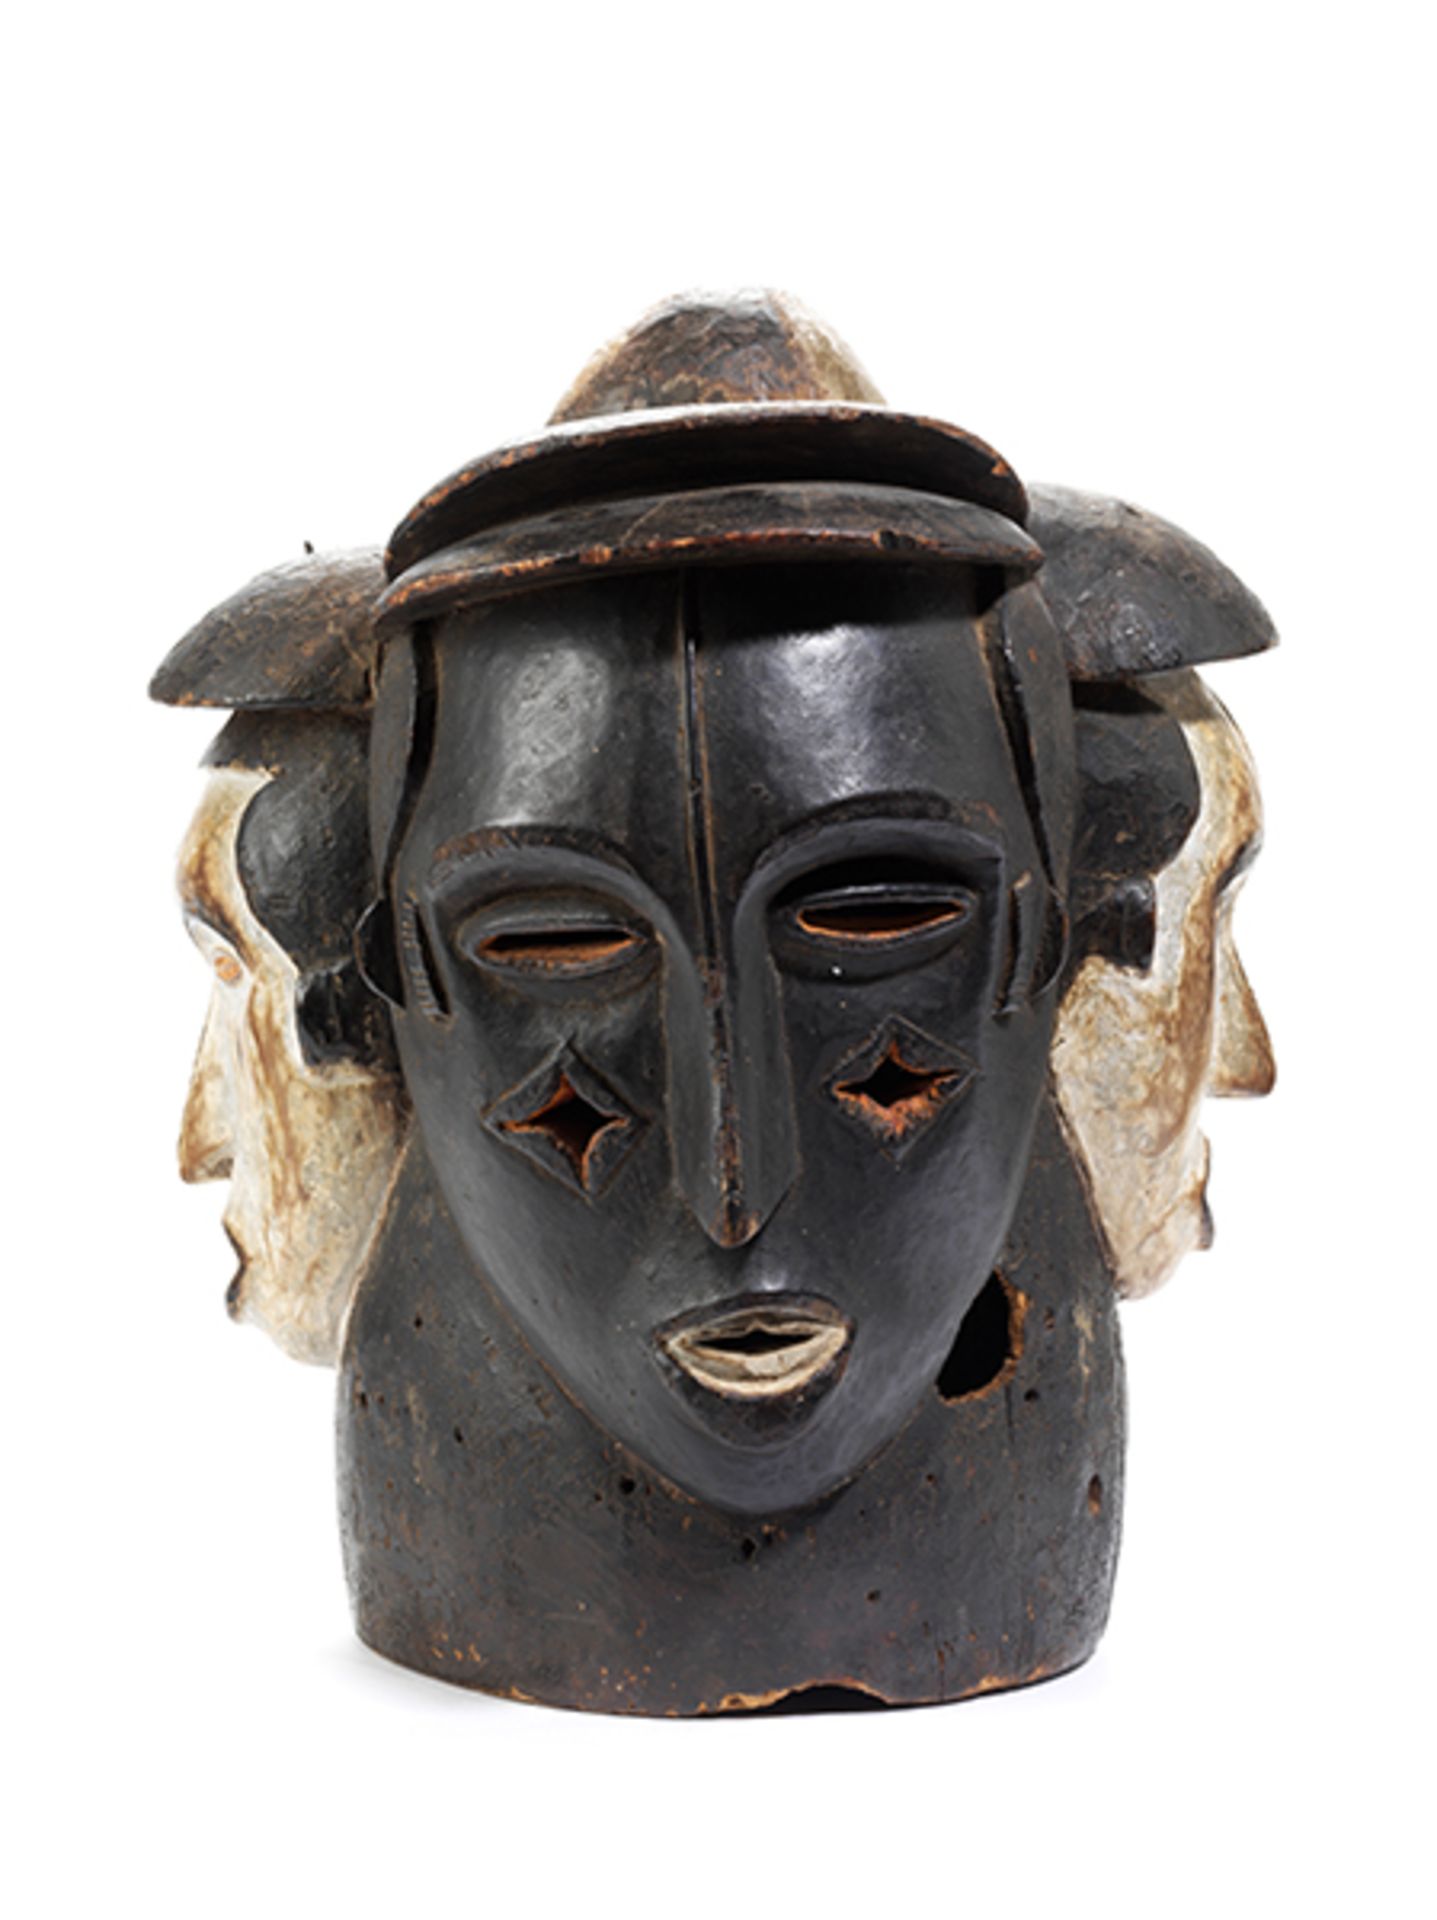 Idoma-Helmmaske Höhe: 41 cm. Idoma, Nigeria, 20. Jahrhundert. Holz, geschnitzt mit schwarzer, weißer